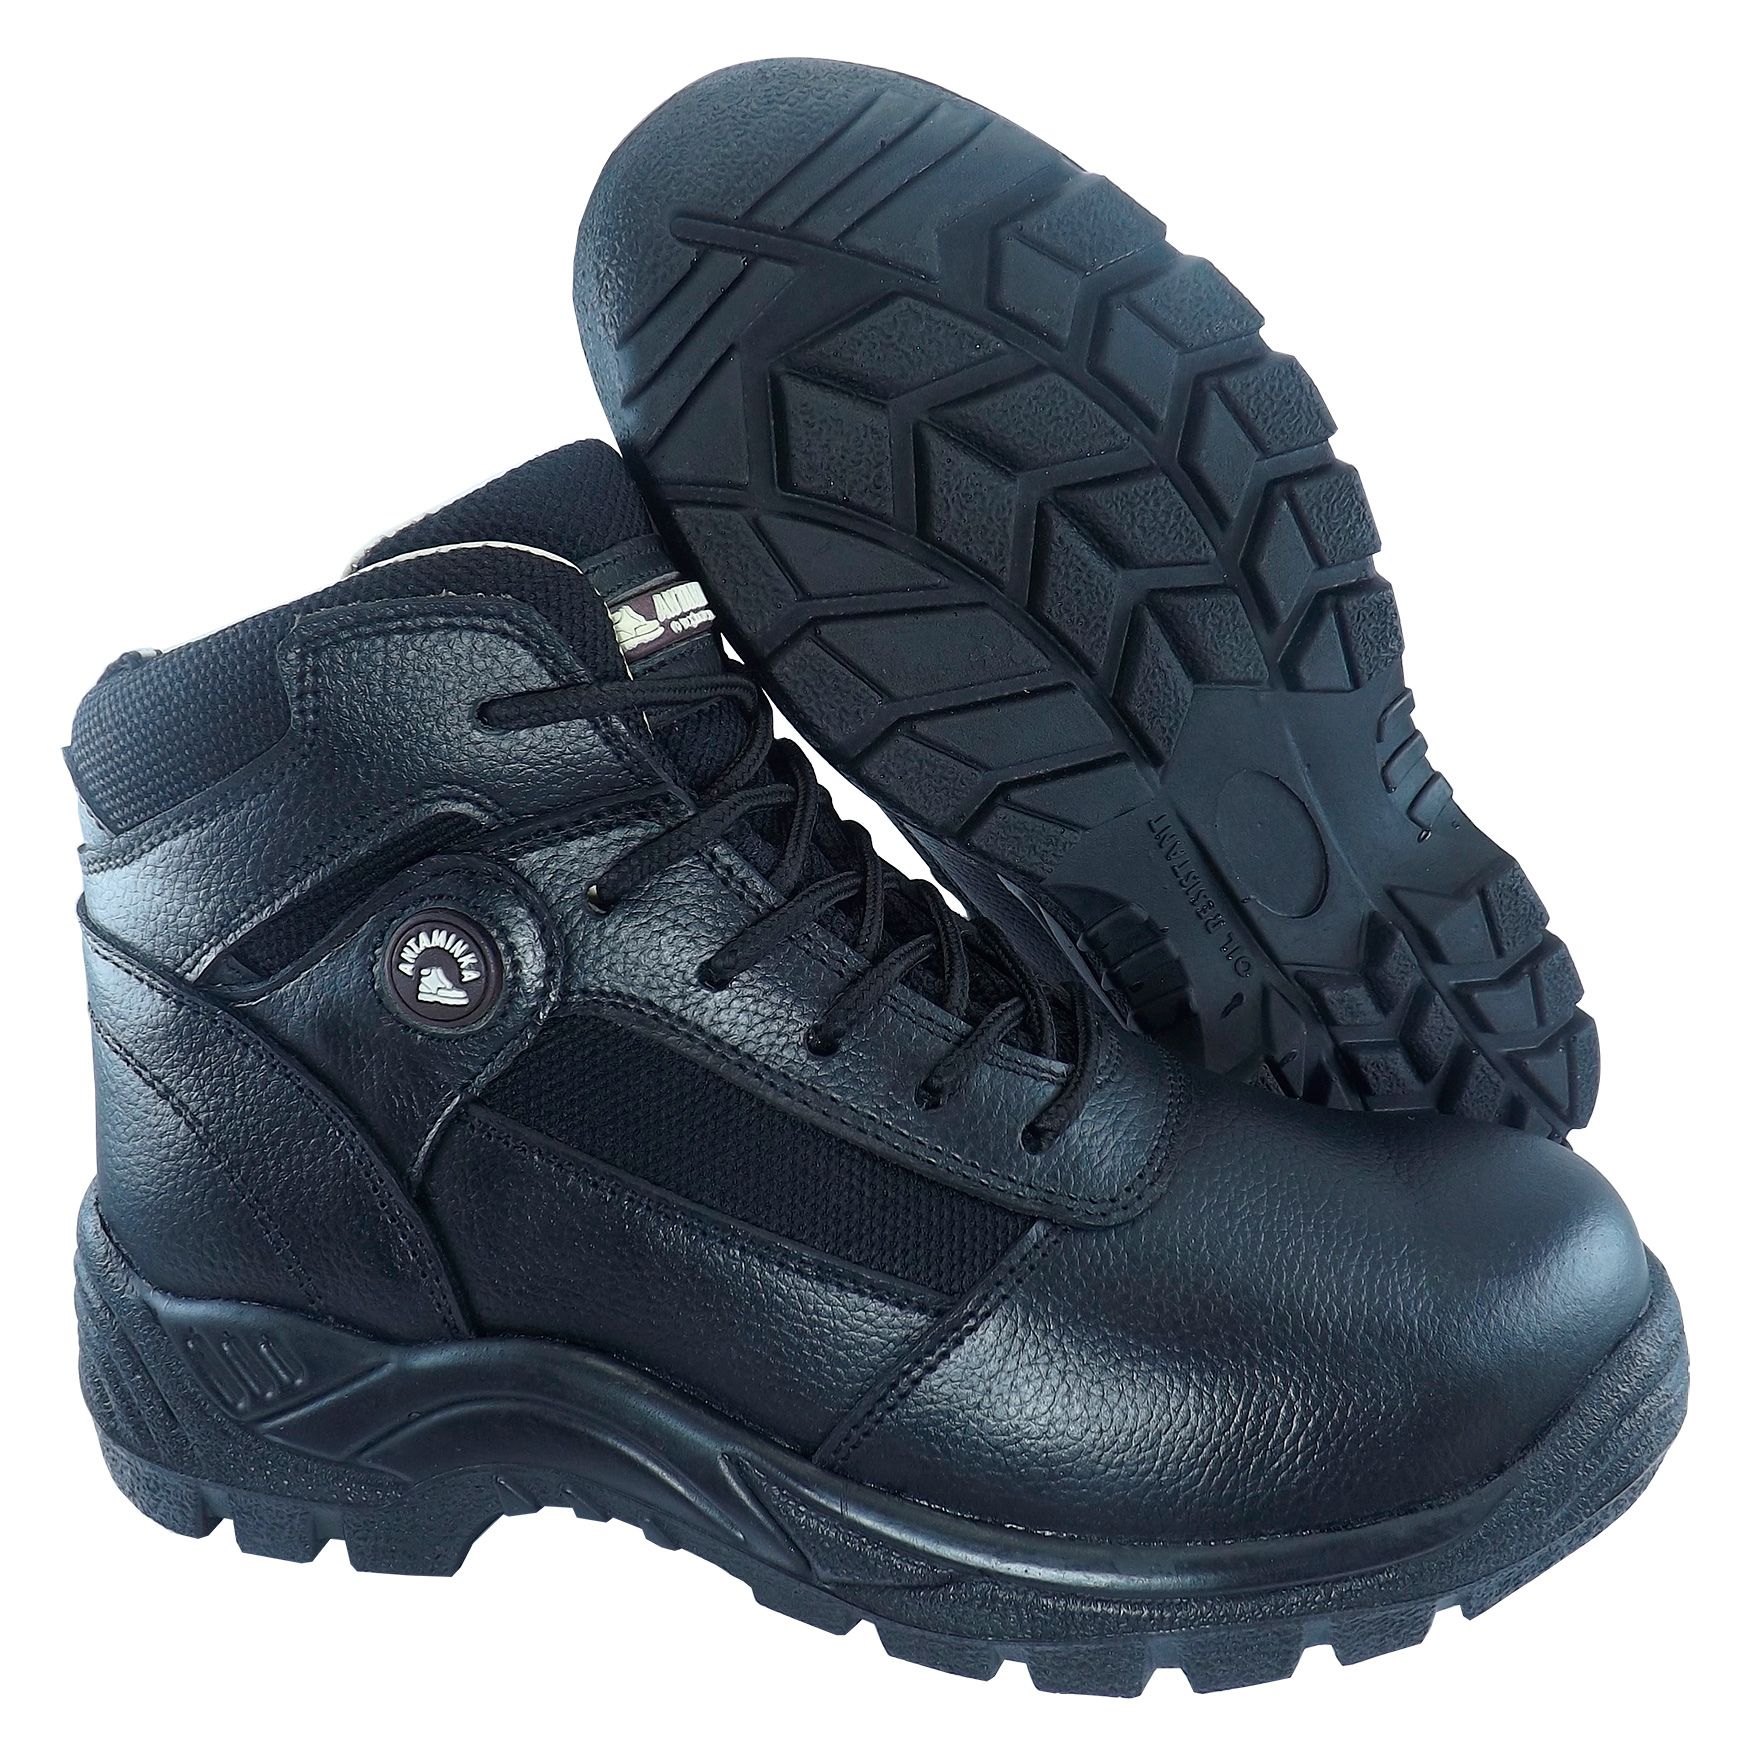 Zapatos de Seguridad Punta de Acero Media Caña Color Negro